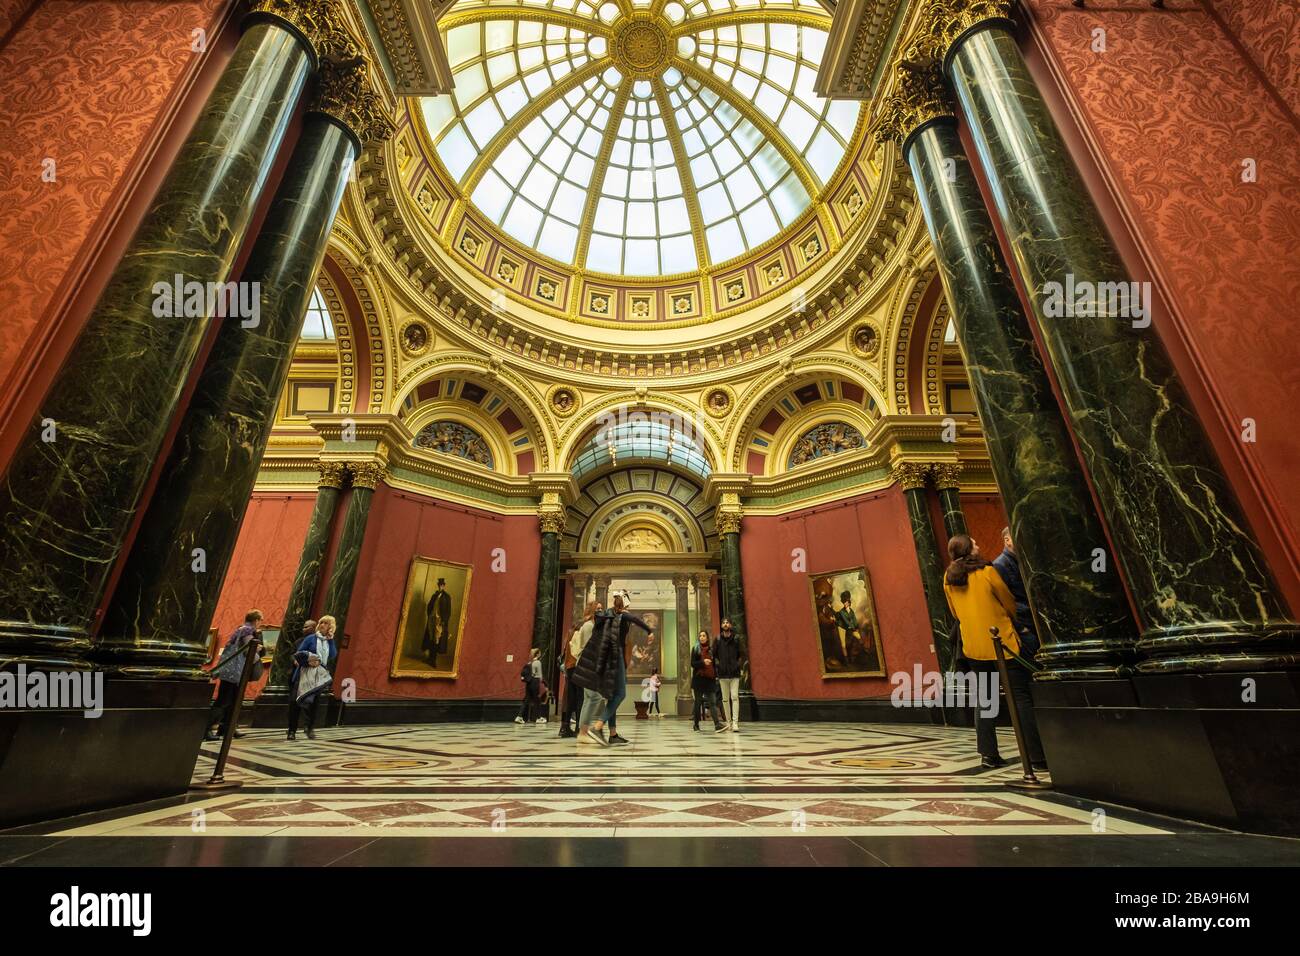 LONDON - Interior der National Portrait Gallery - ein Wahrzeichen und eine beliebte Besucherattraktion am Trafalgar Square. Stockfoto